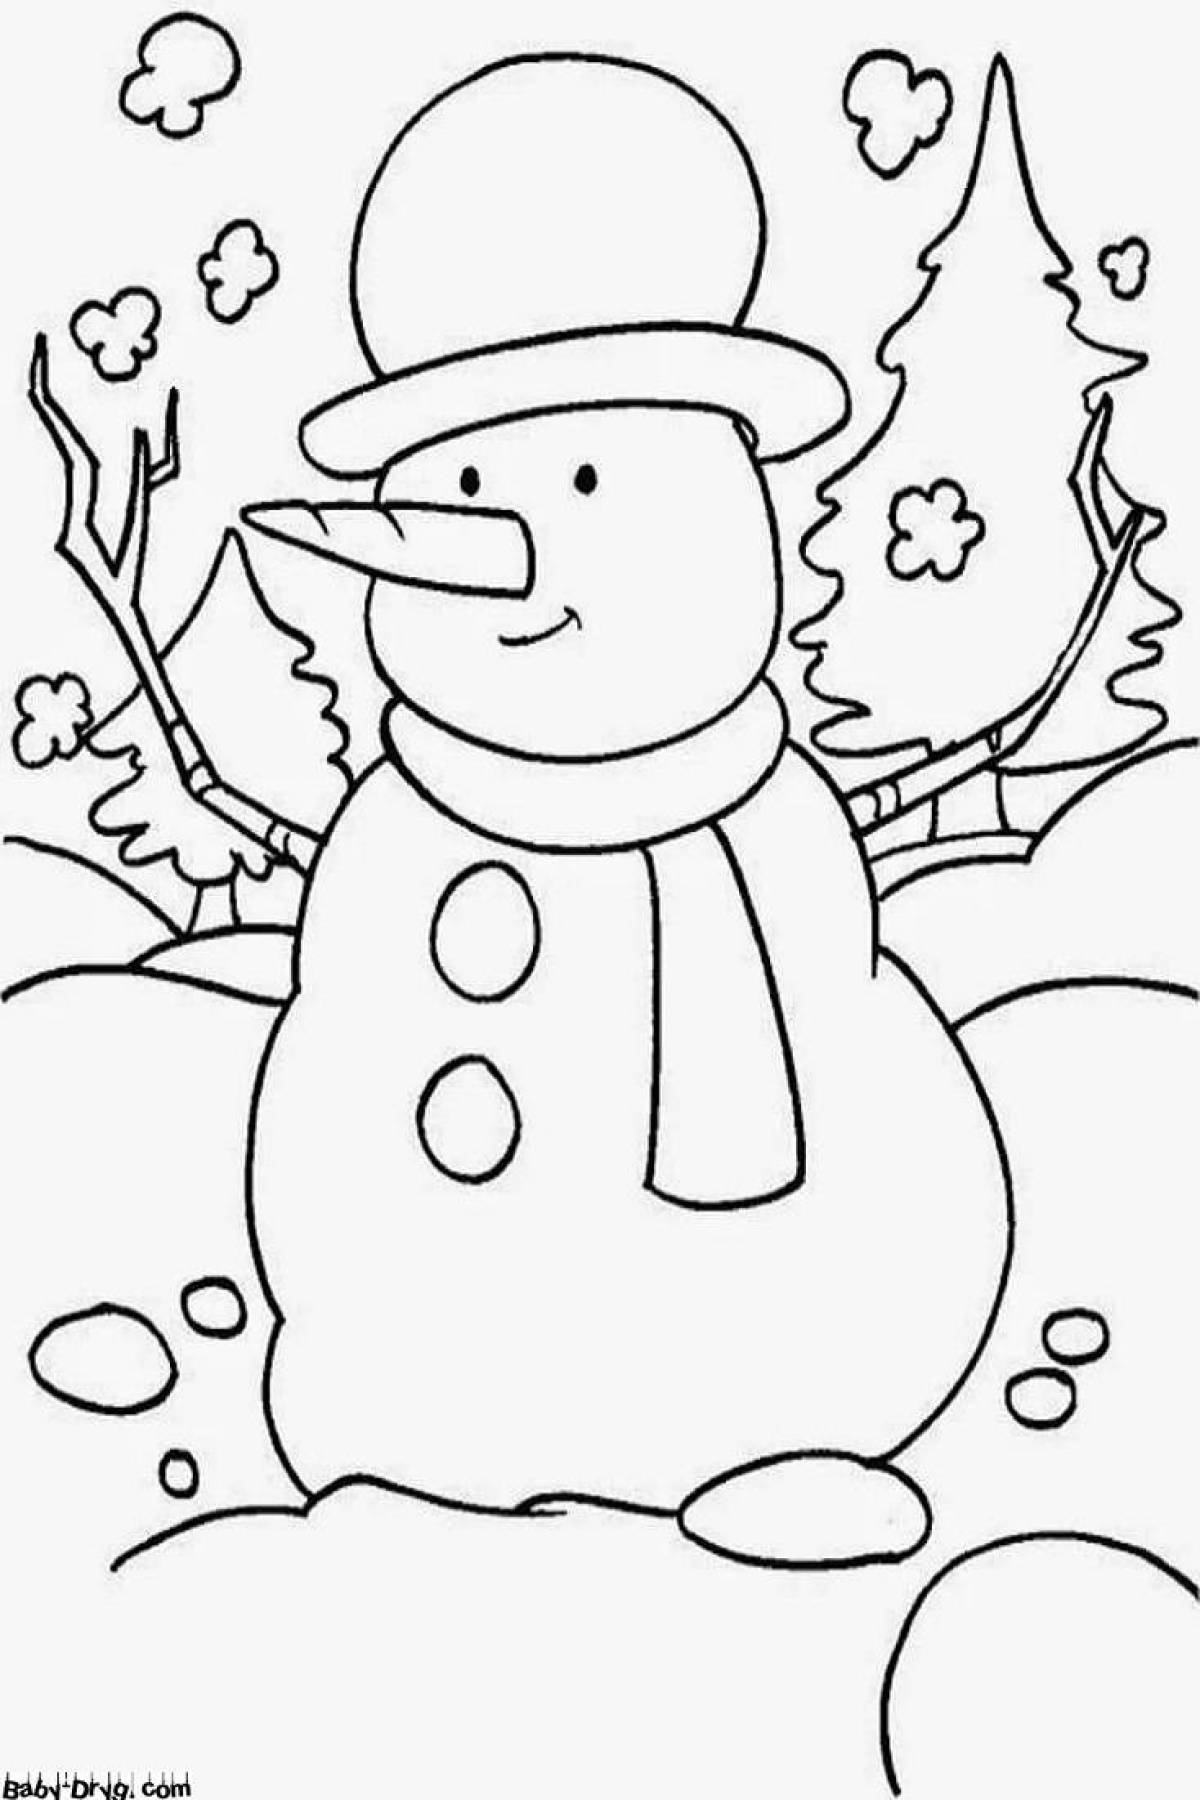 Веселый снеговик раскраски для детей